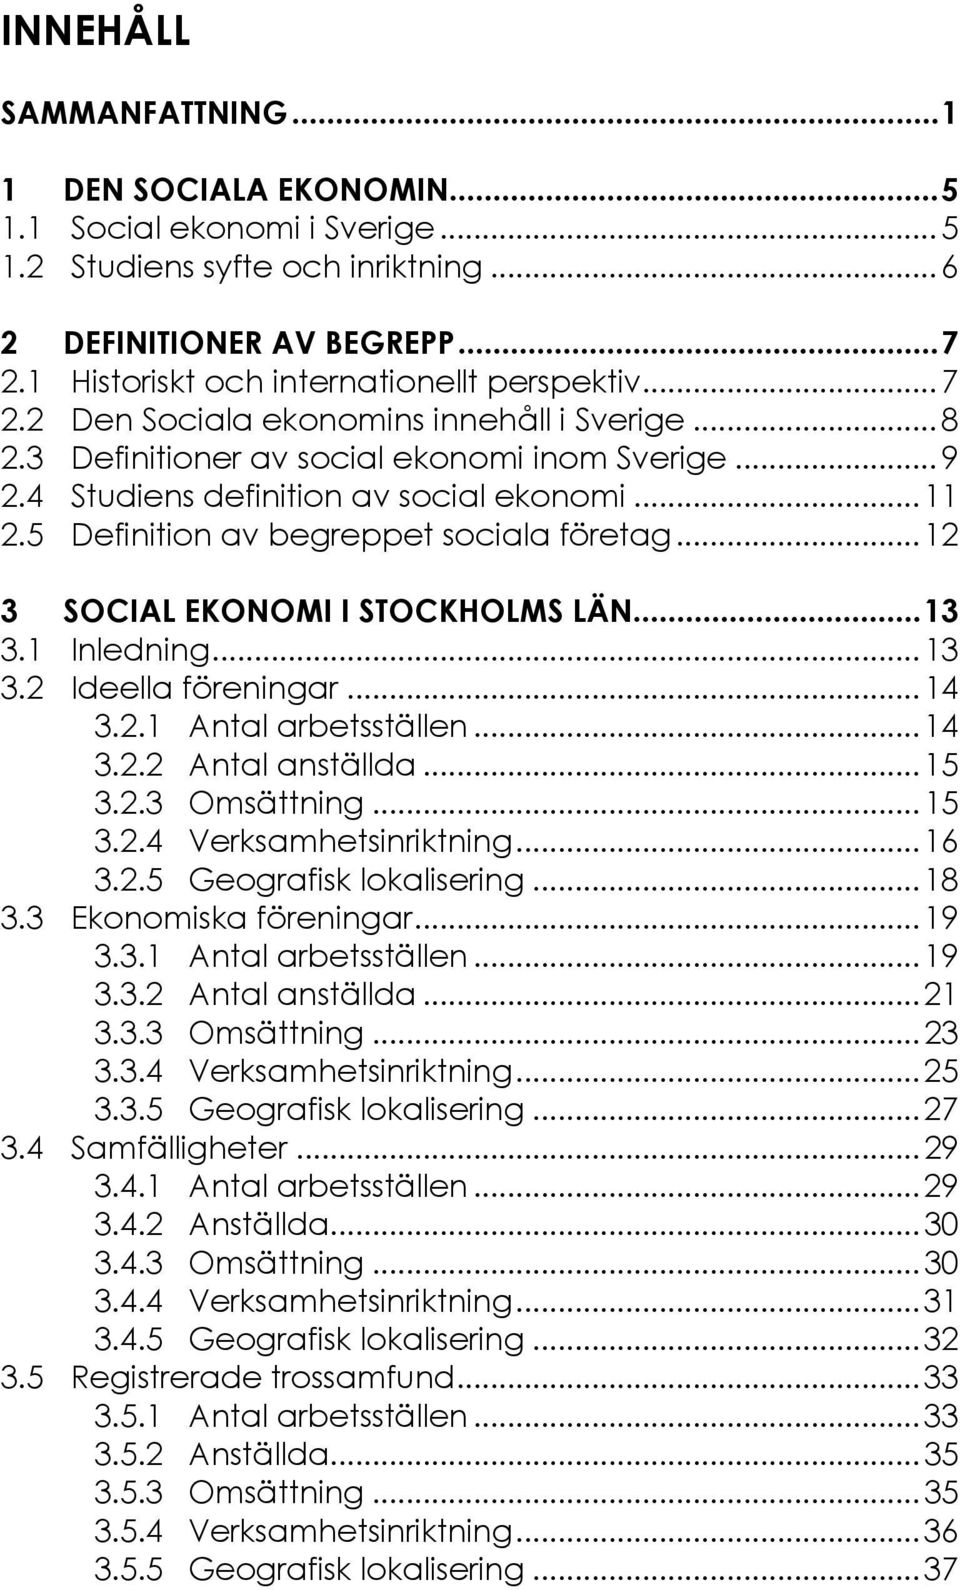 5 Definition av begreppet sociala företag...12 3 SOCIAL EKONOMI I STOCKHOLMS LÄN...13 3.1 Inledning...13 3.2 Ideella föreningar...14 3.2.1 Antal arbetsställen...14 3.2.2 Antal anställda...15 3.2.3 Omsättning.